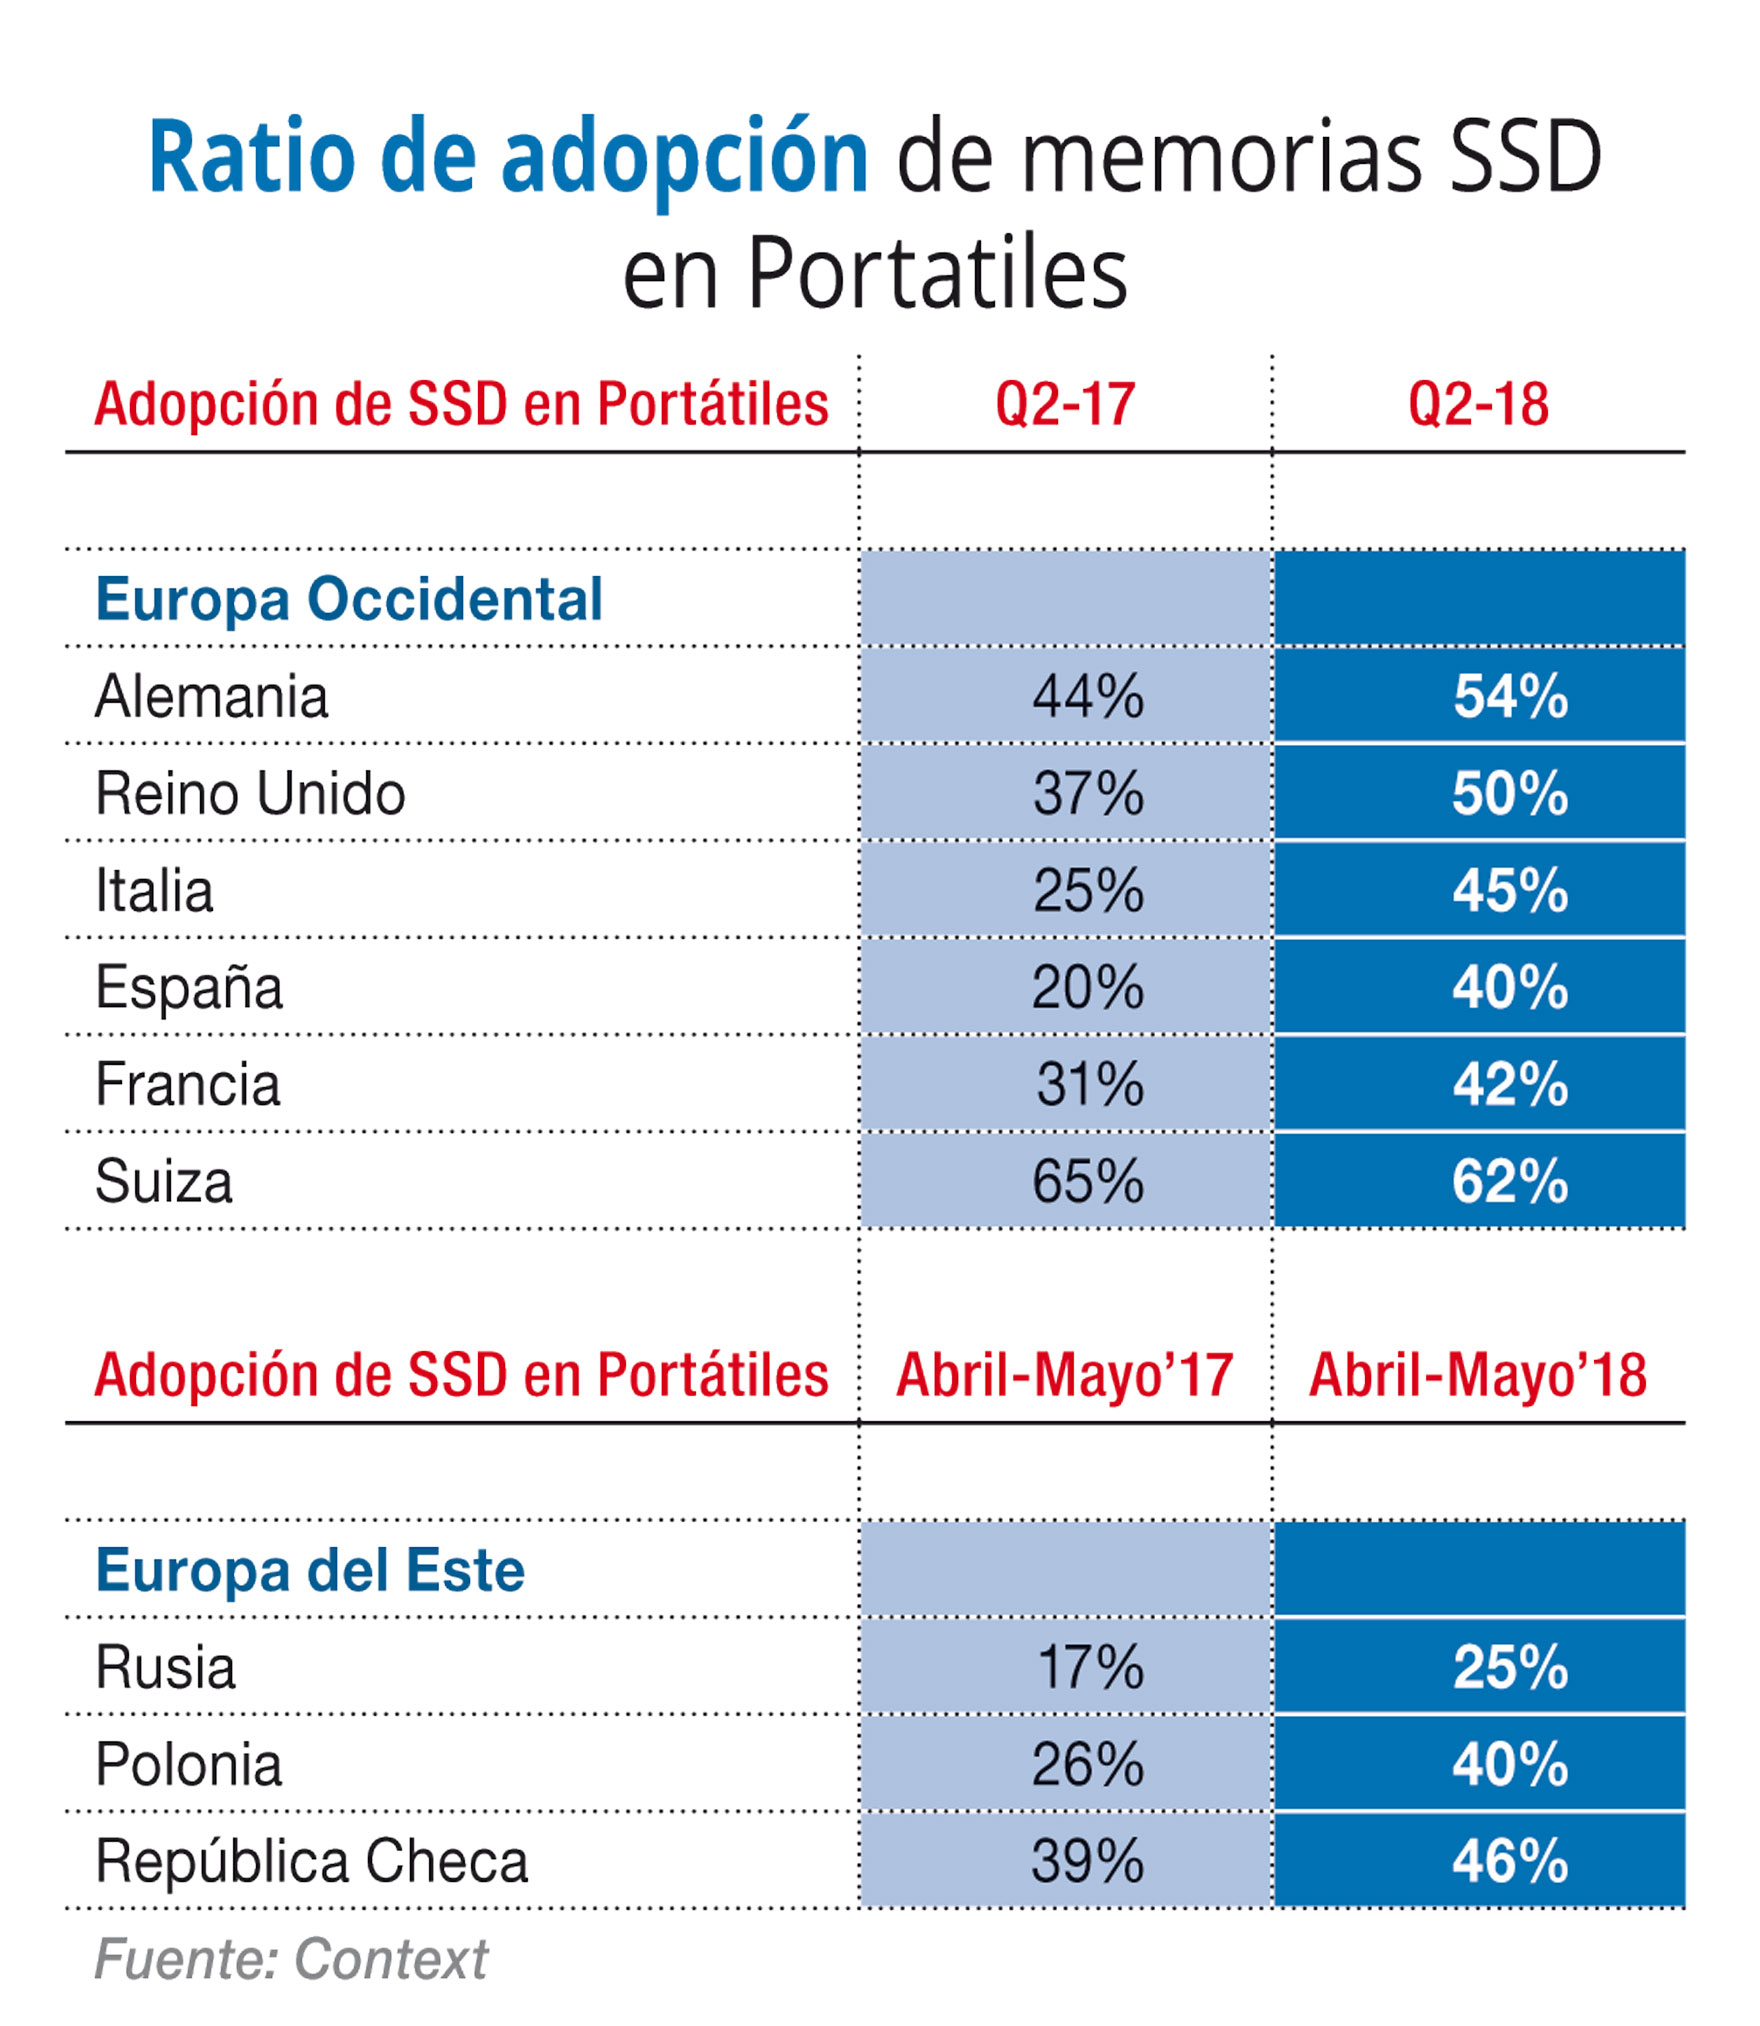 Ratio de adopción de memorias SSD en Portatiles